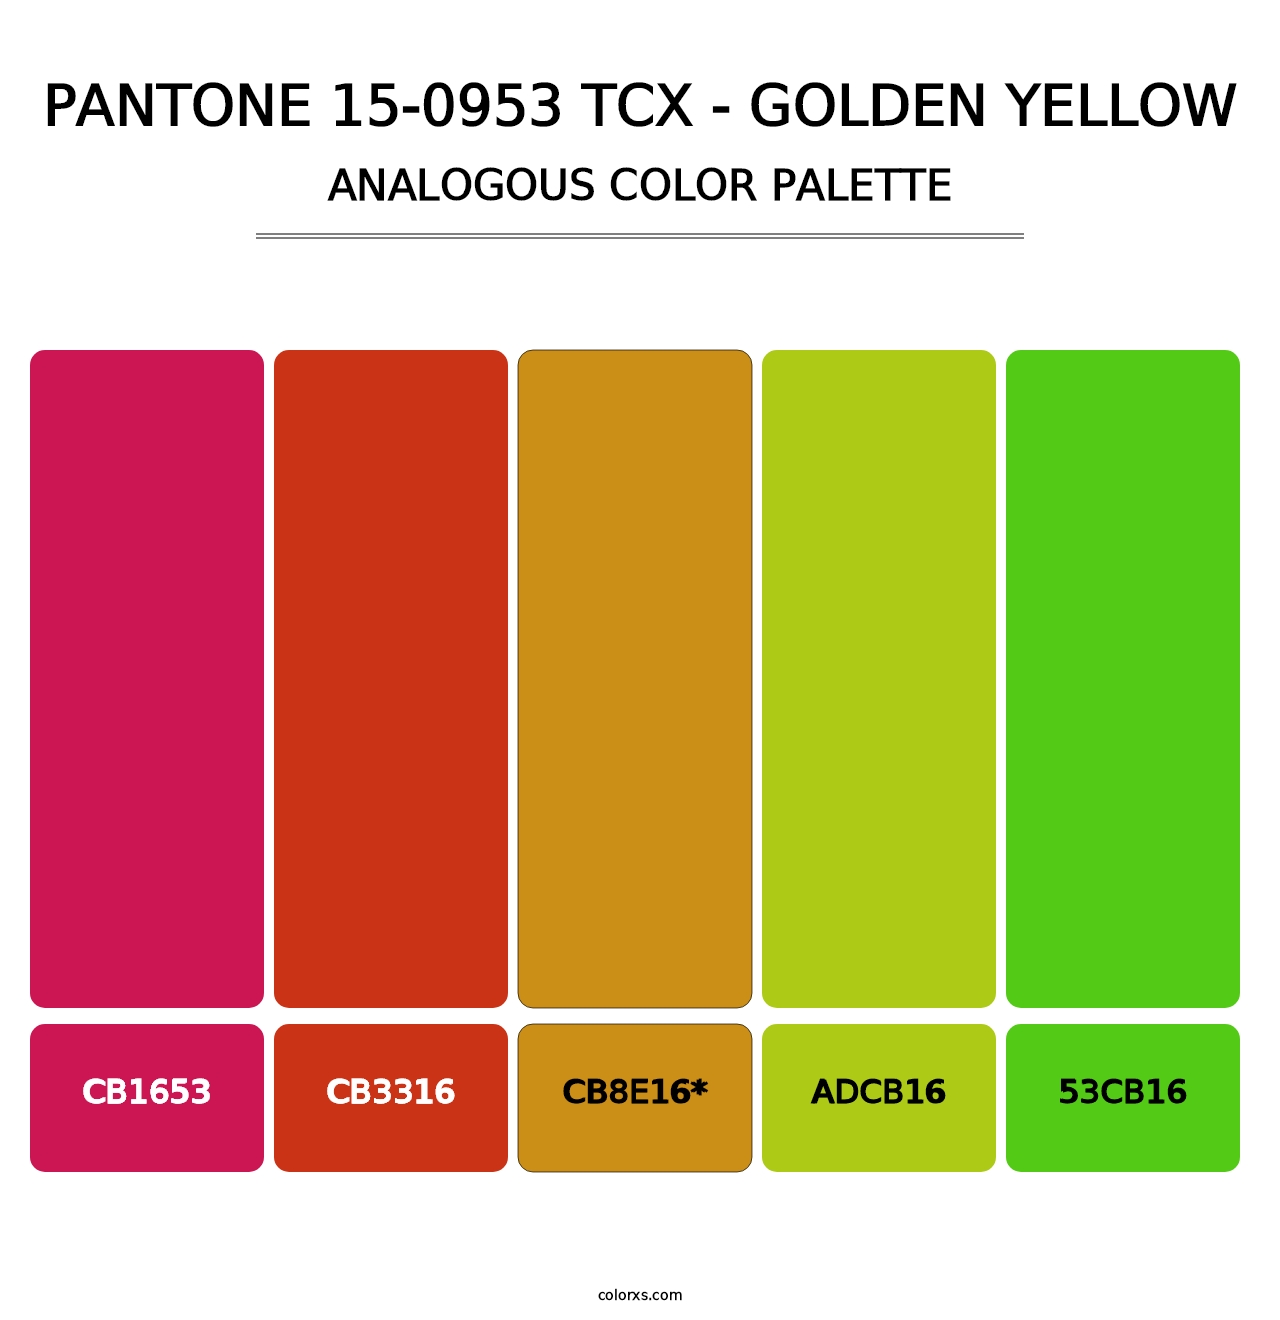 PANTONE 15-0953 TCX - Golden Yellow - Analogous Color Palette